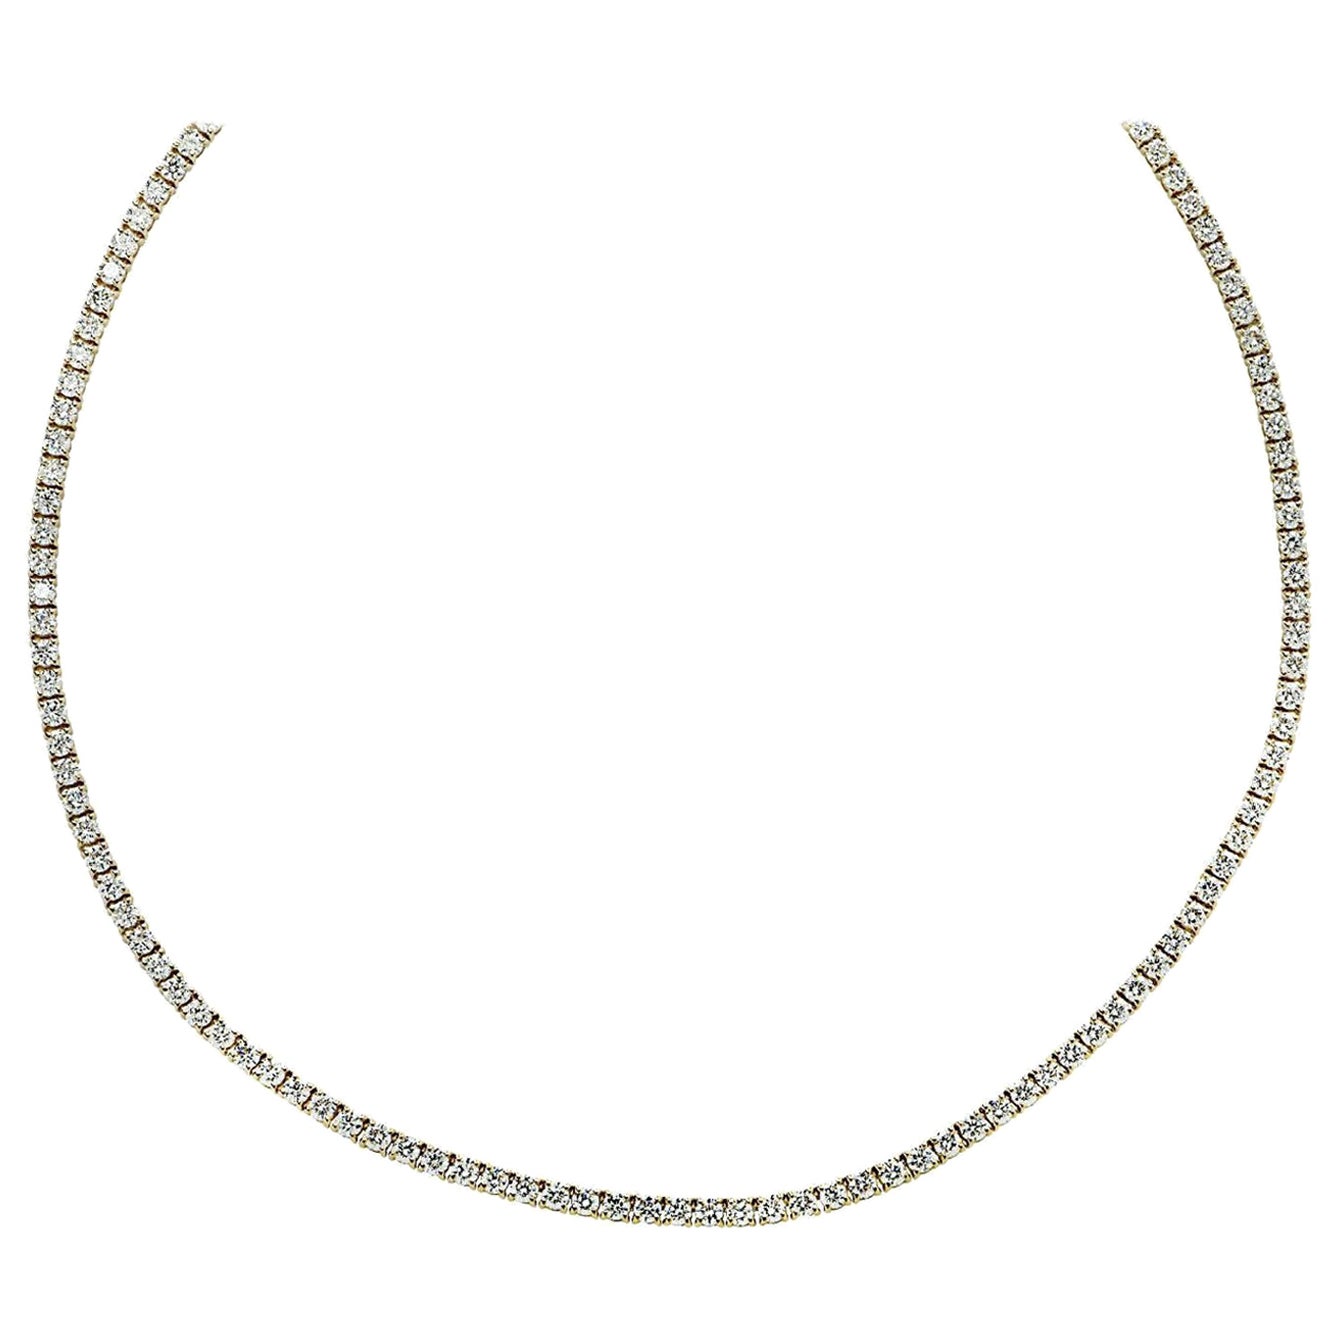 Tennis-Halskette mit lebhaften 10,38 Karat Diamanten in gerader Linie